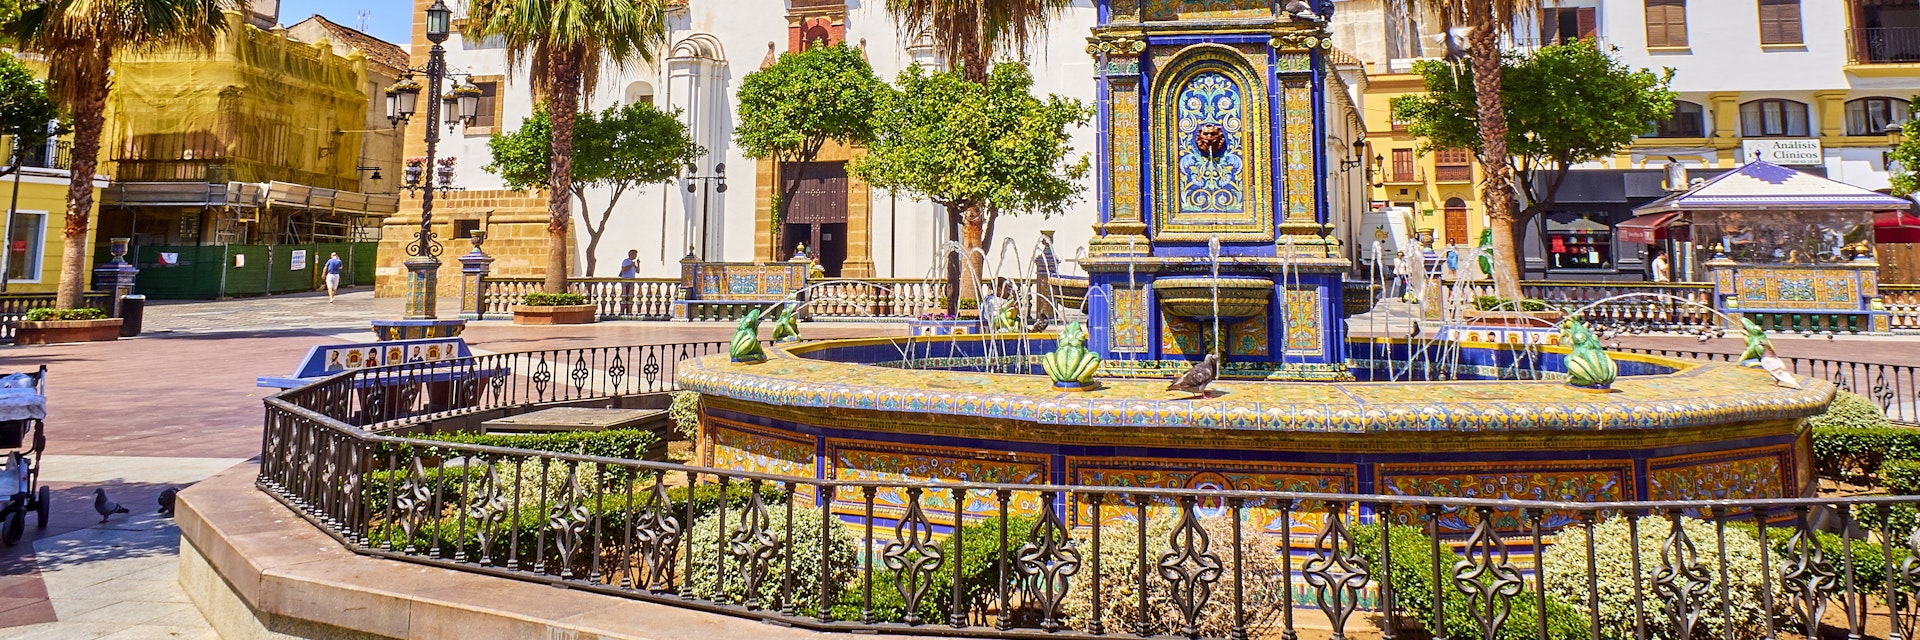 Algeciras, Spain - June 29, 2019. Plaza Alta Square of Algeciras, with the Nuestra Senora de la Palma Parish in the background and the monumental tiled fountain in the foreground. Algeciras, Cadiz province, Andalusia, Spain.